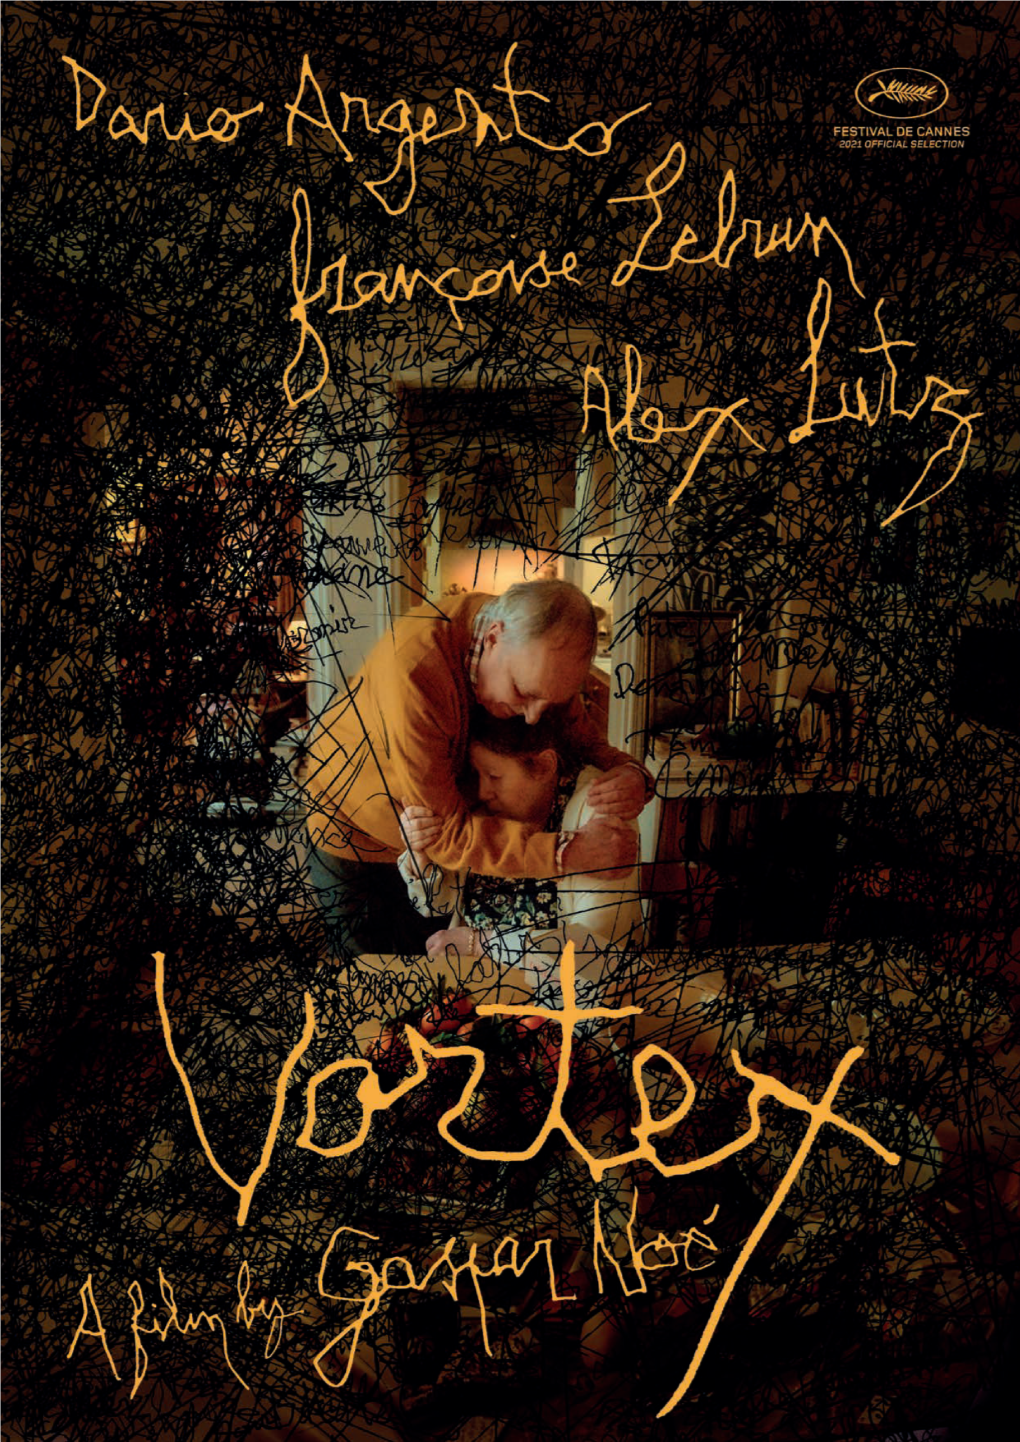 Vortex by Gaspar Noé